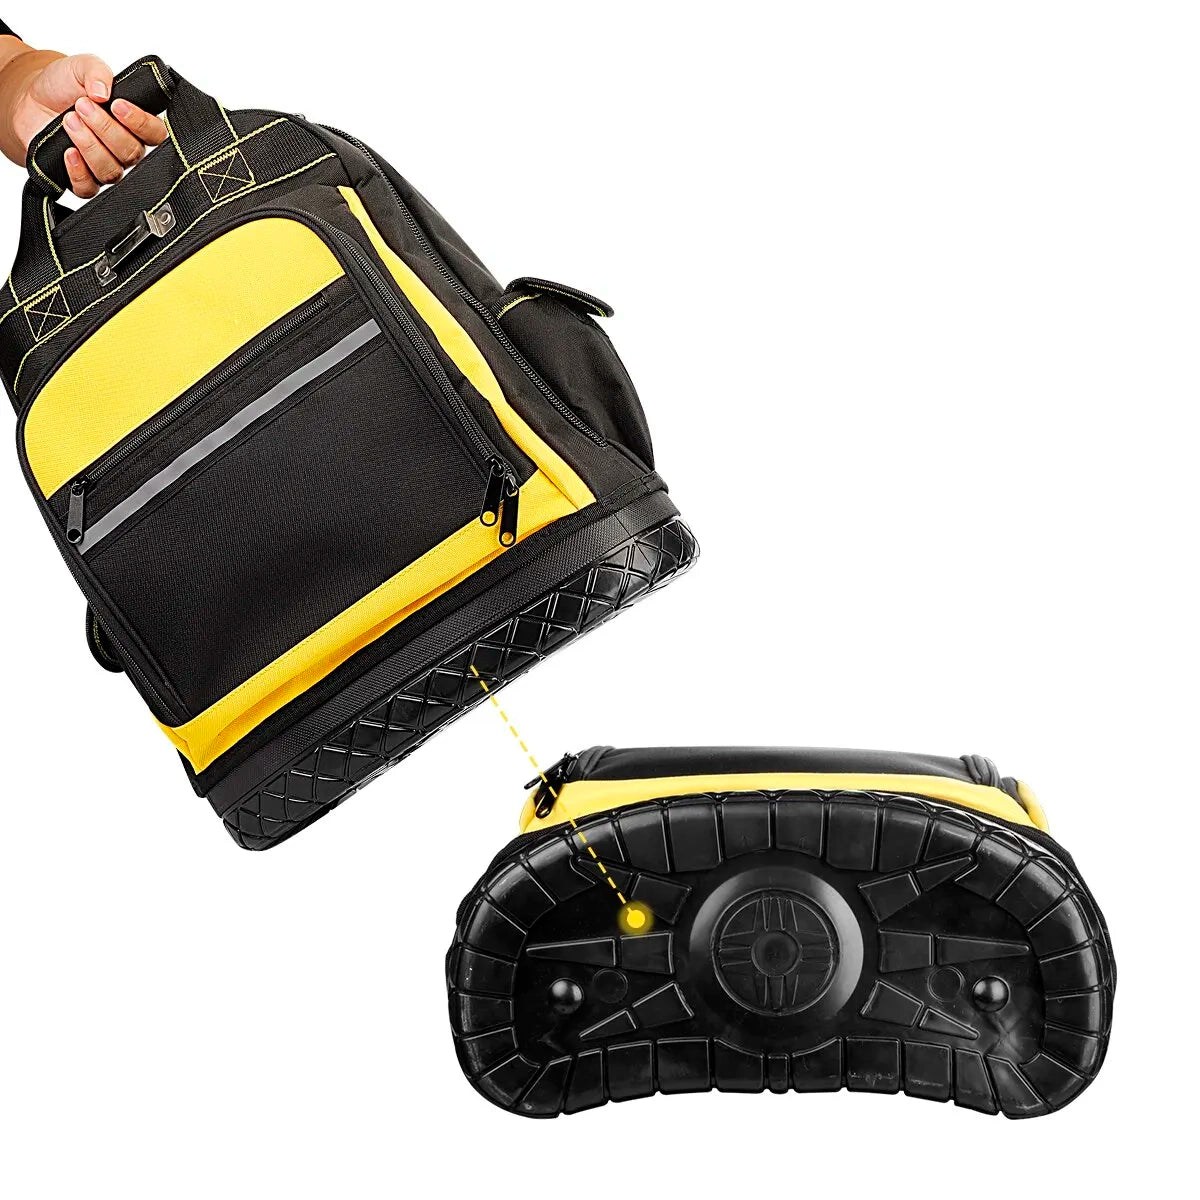 High-Density Waterproof Tool Backpack.